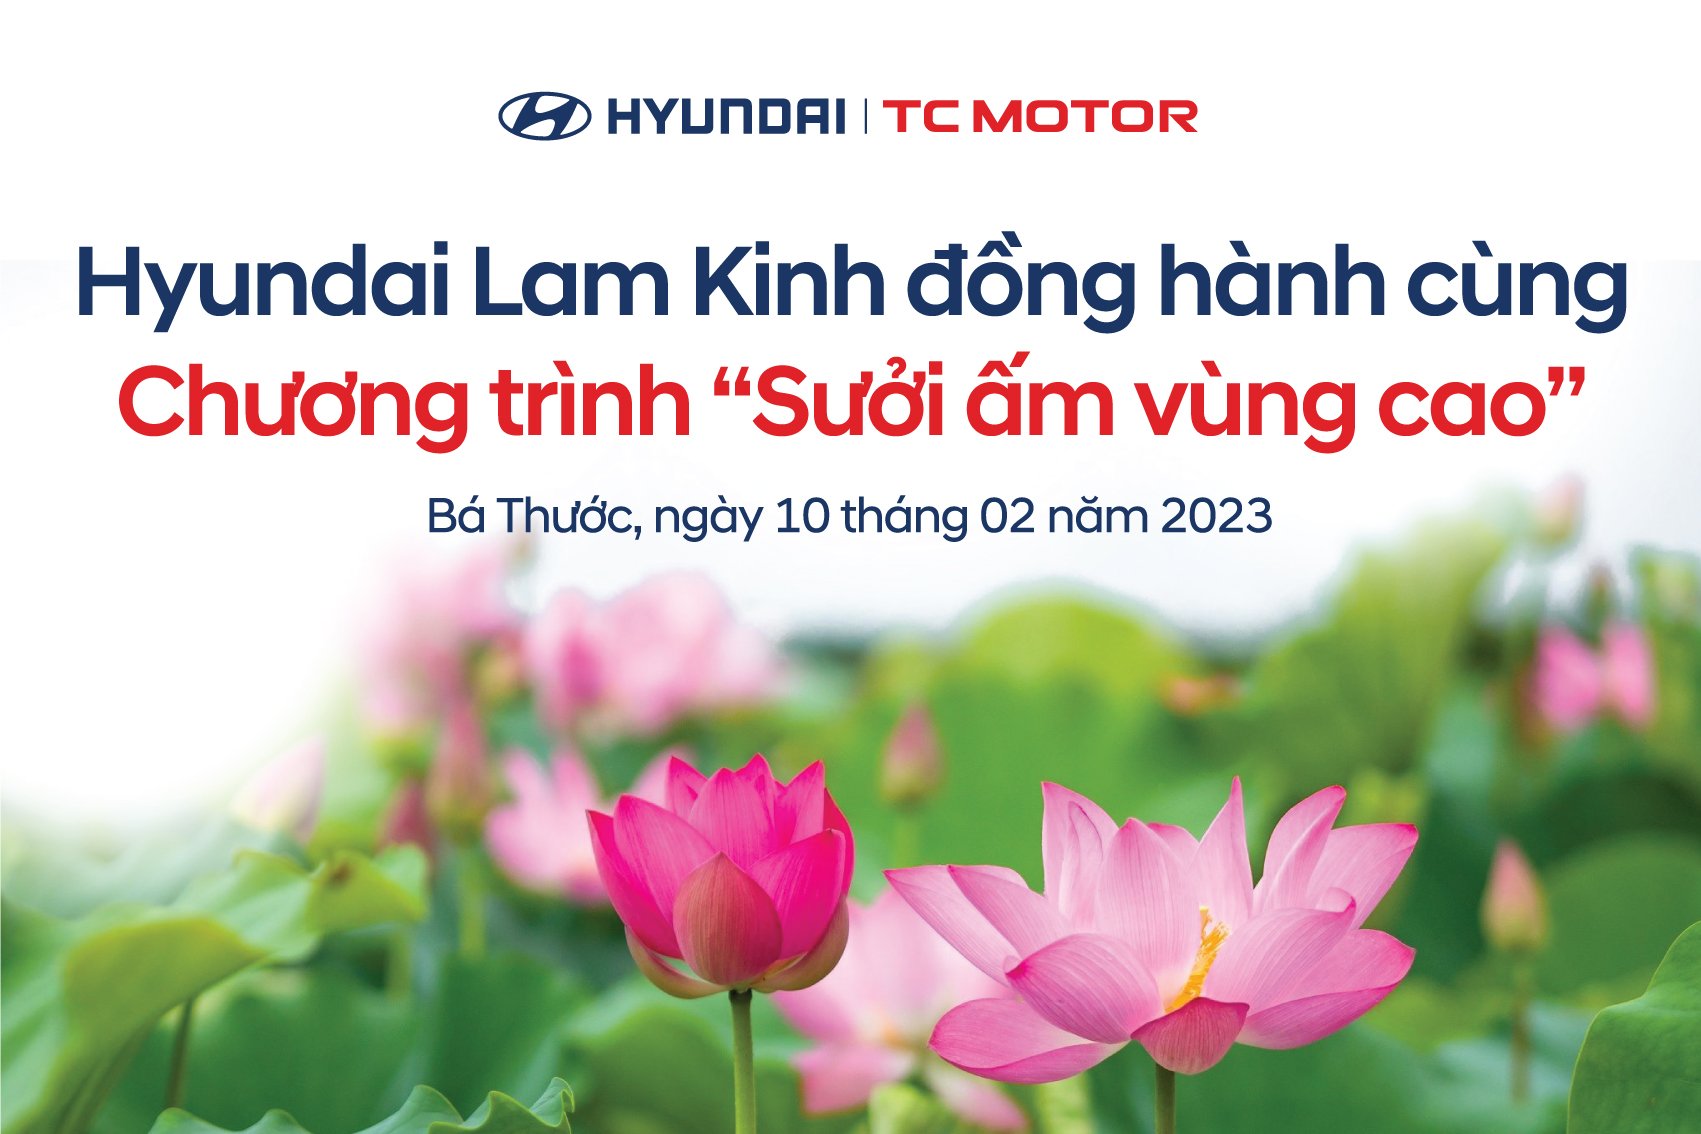 Hyundai Lam Kinh - hiện đại, sang trọng và đầy tính năng mới mẻ. Hãy cùng chiêm ngưỡng nét đẹp của dòng xe này qua những hình ảnh đẹp mắt và sự khác biệt nổi bật của nó với những dòng xe khác.